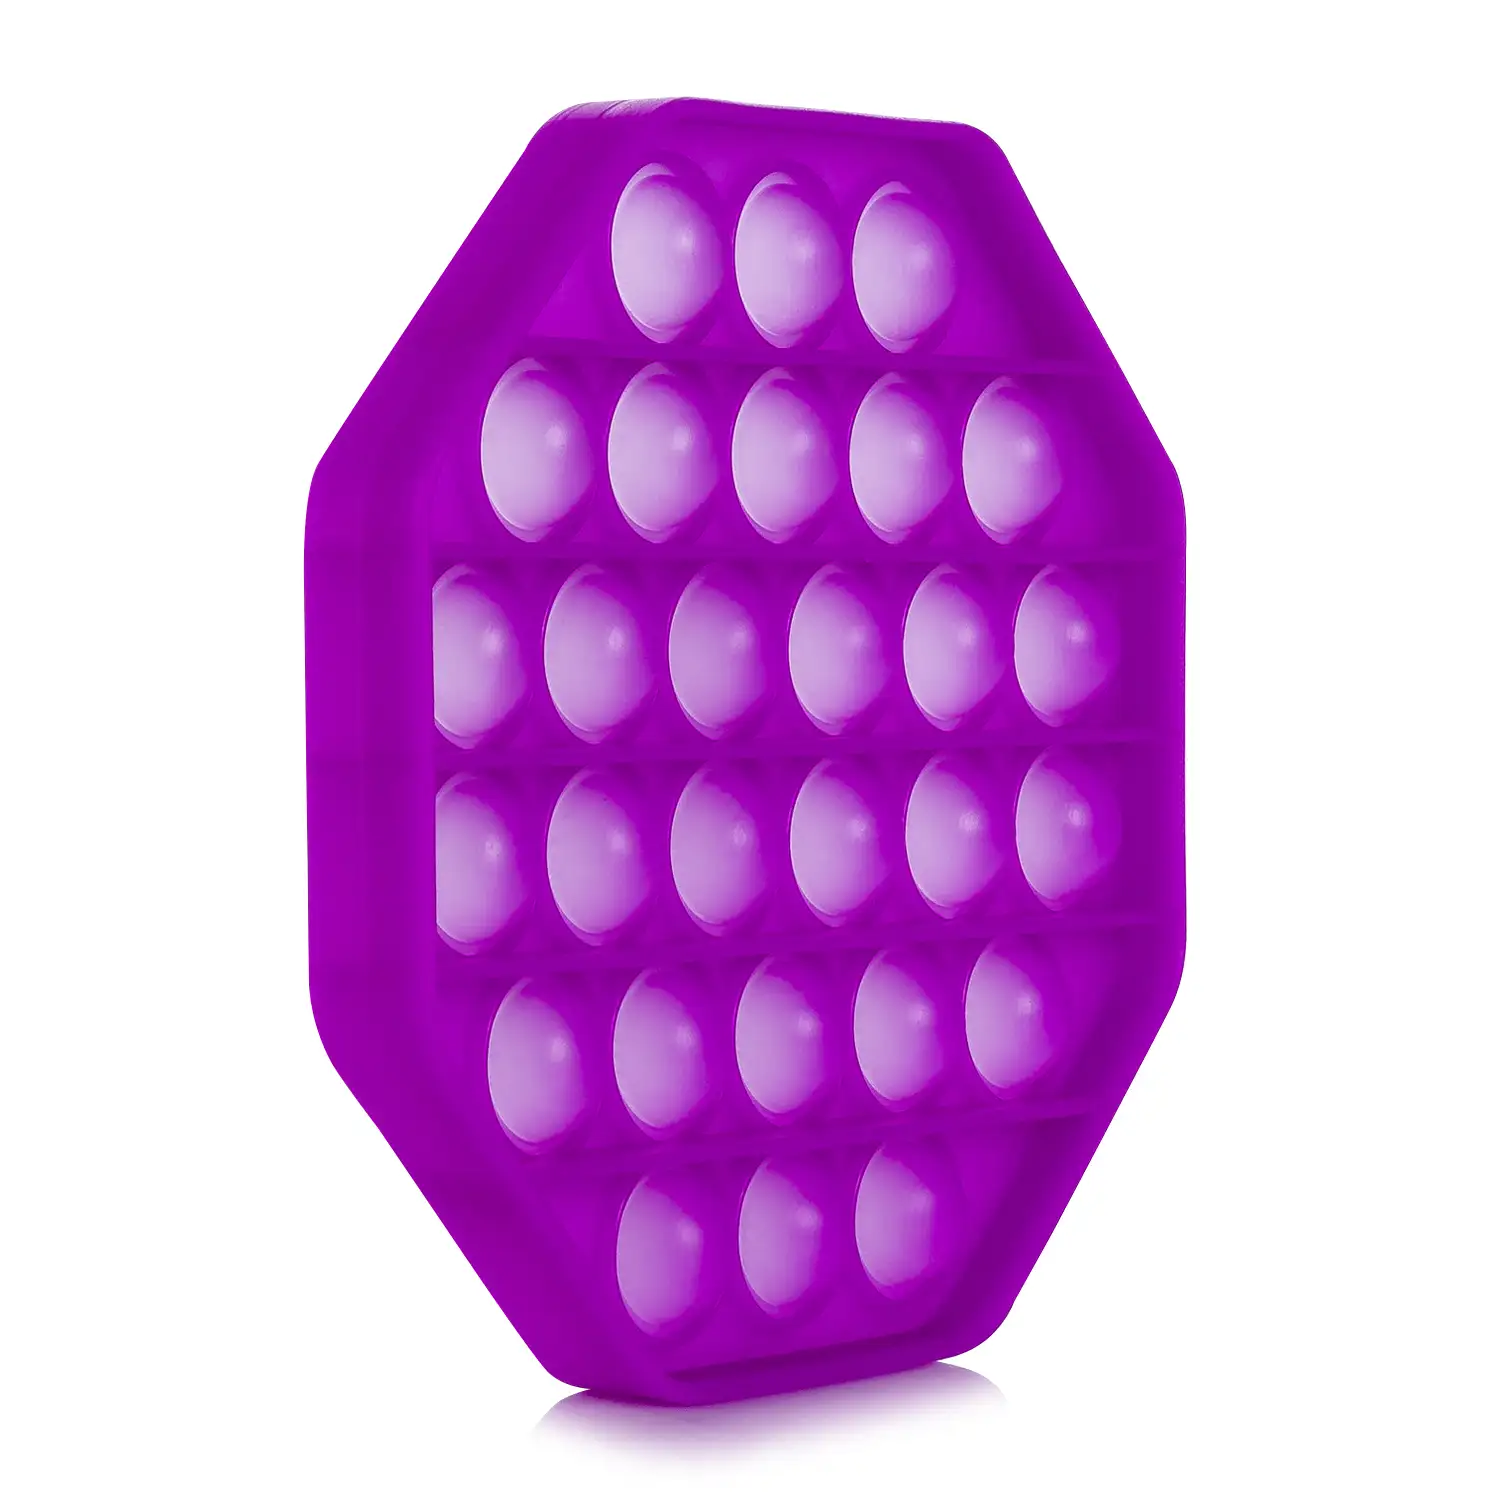 Bubble Pop It juguete sensitivo desestresante, burbujas de silicona para apretar y pulsar. Diseño octogonal.